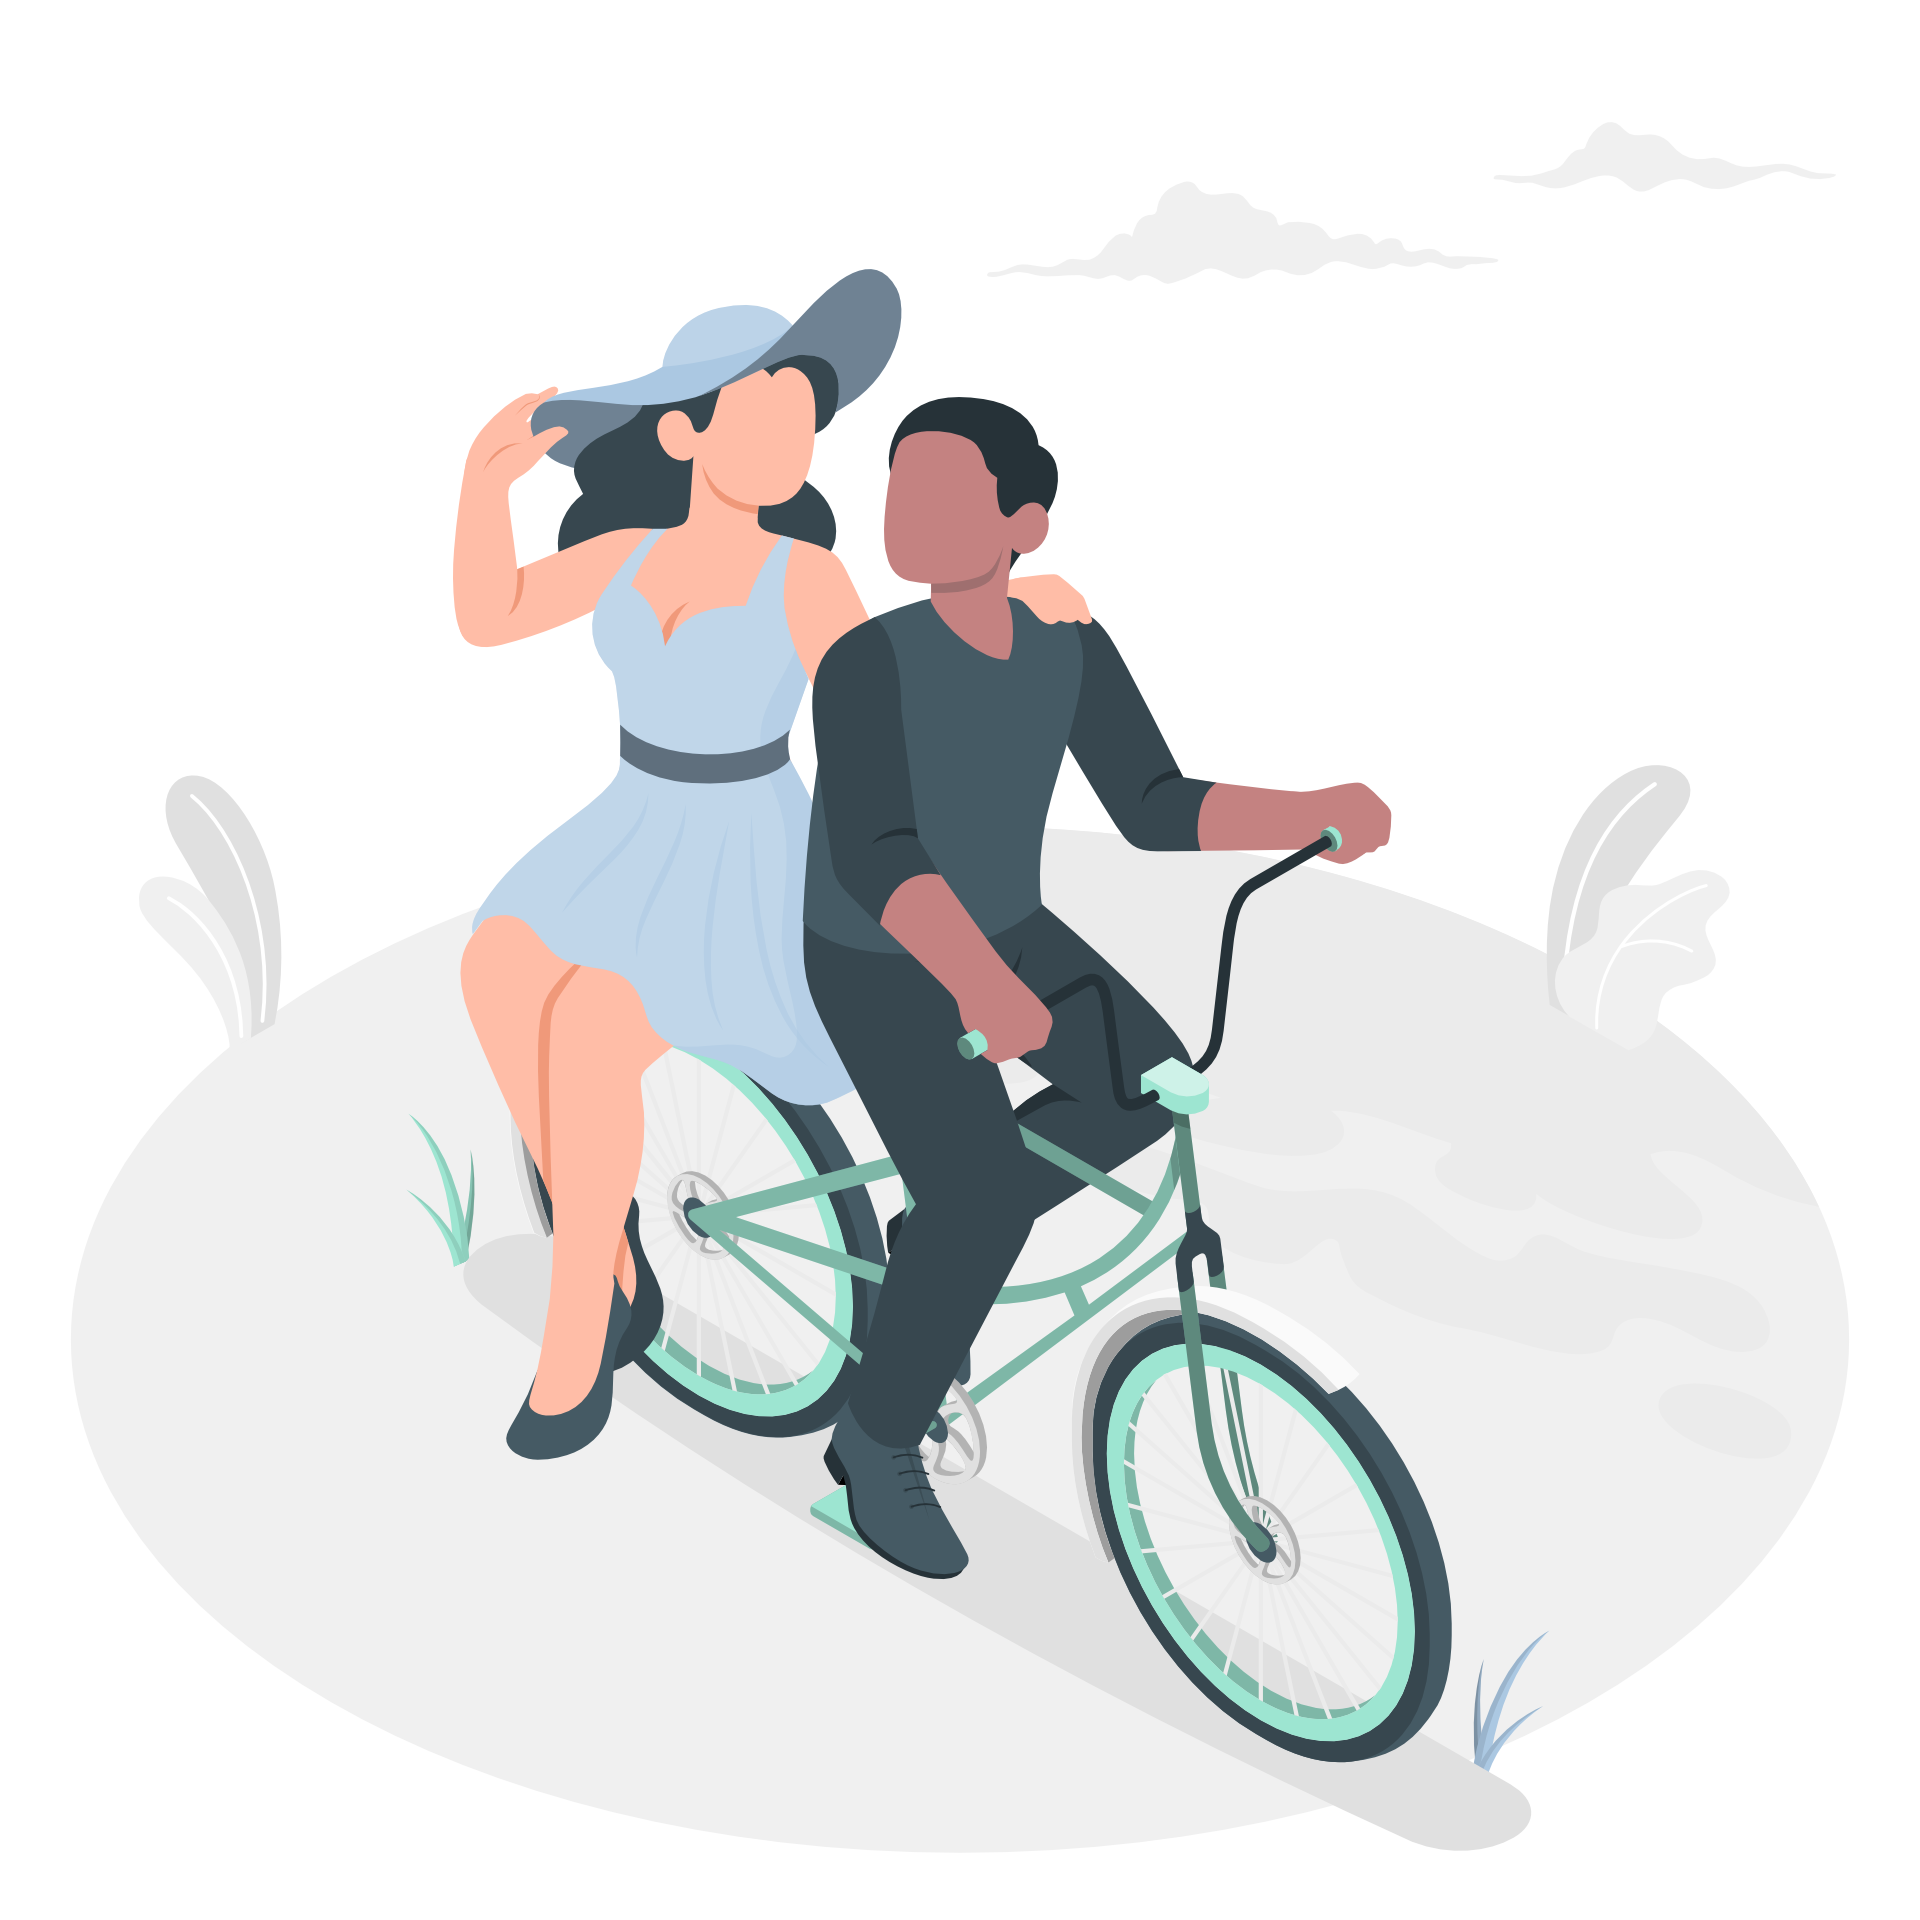 Vrouw en man op een fiets - https://storyset.com/people - People illustrations by Storyset